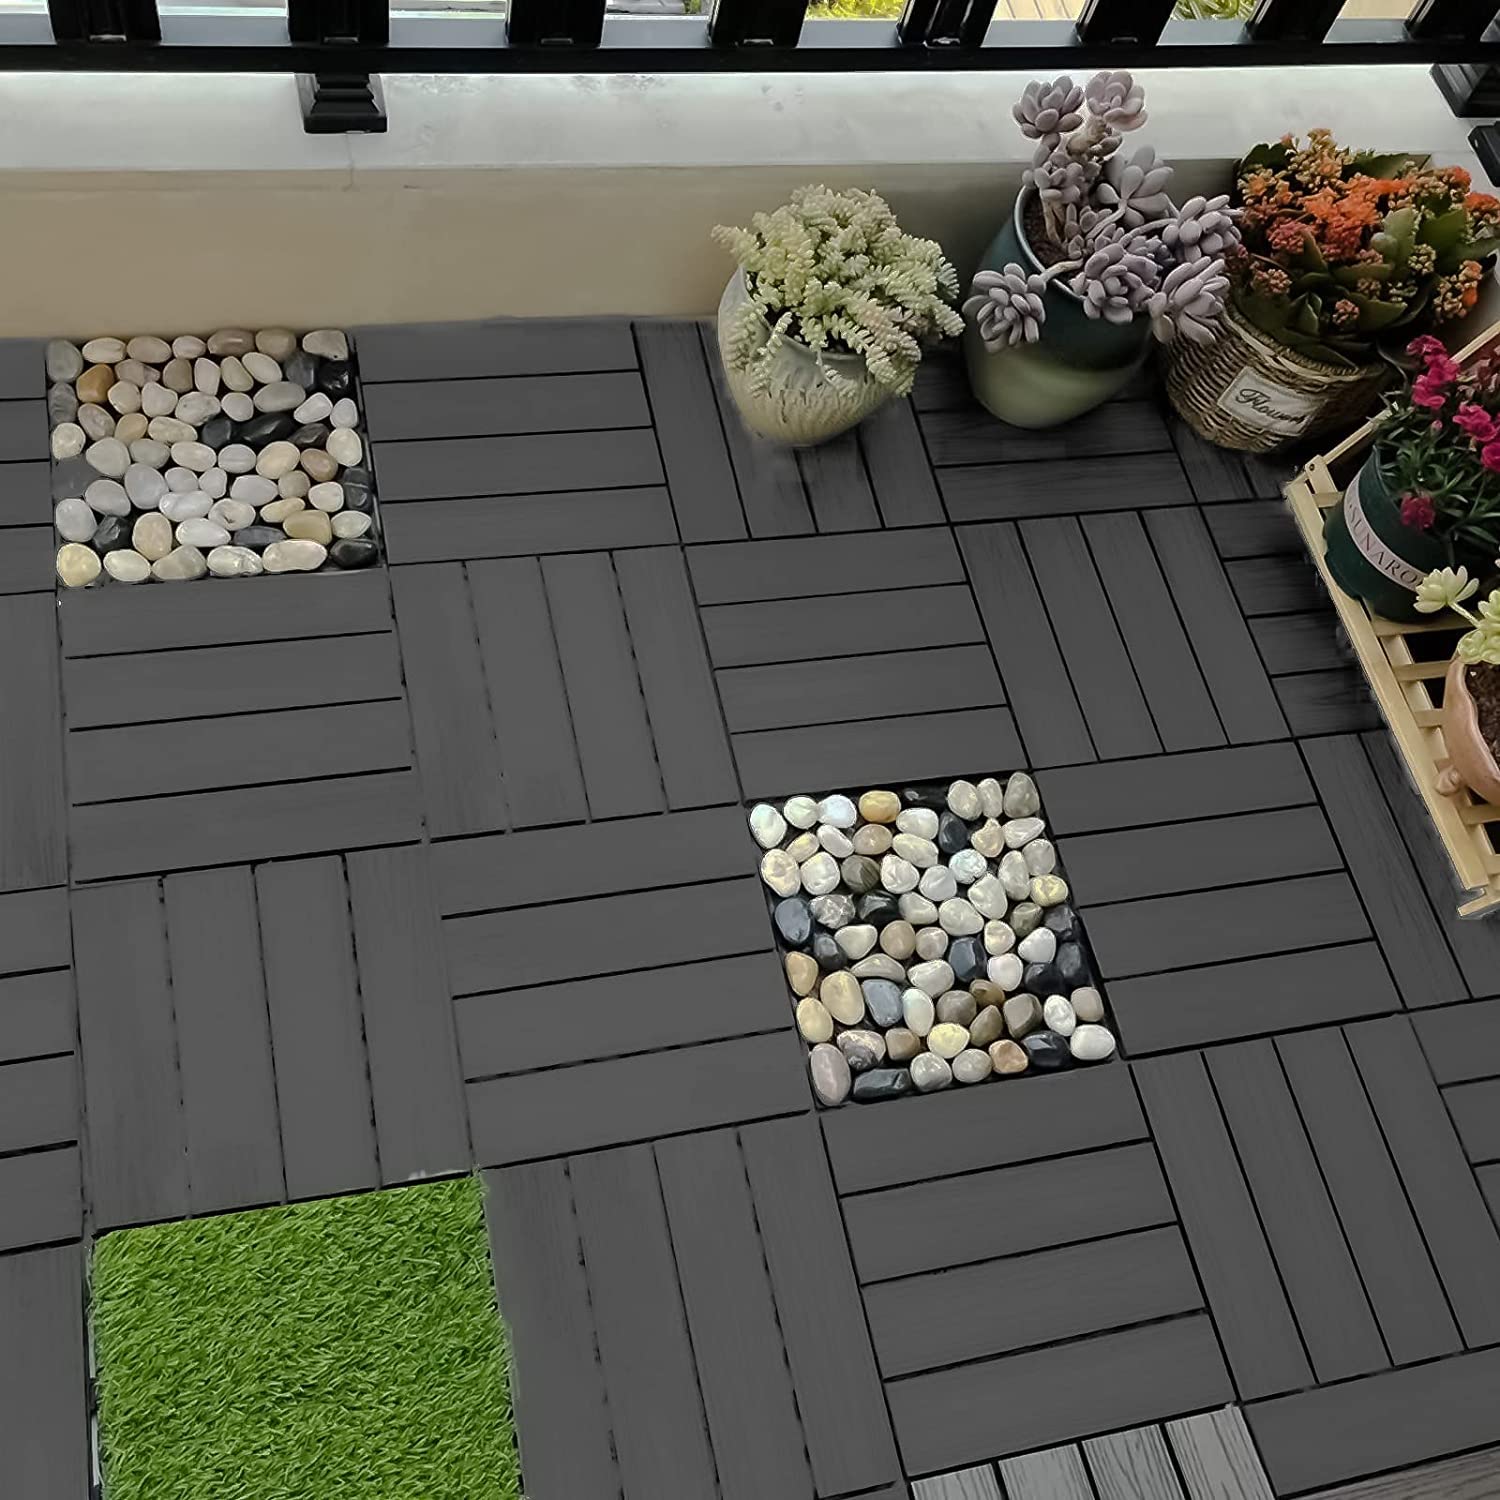 Plantex Tiles for Floor-Interlocking Heavy Plastic Tiles/Garden Tile/Quick Flooring Solution for Indoor/Outdoor Deck Tile-Pack of 6 (Dark Grey,APS-1211)